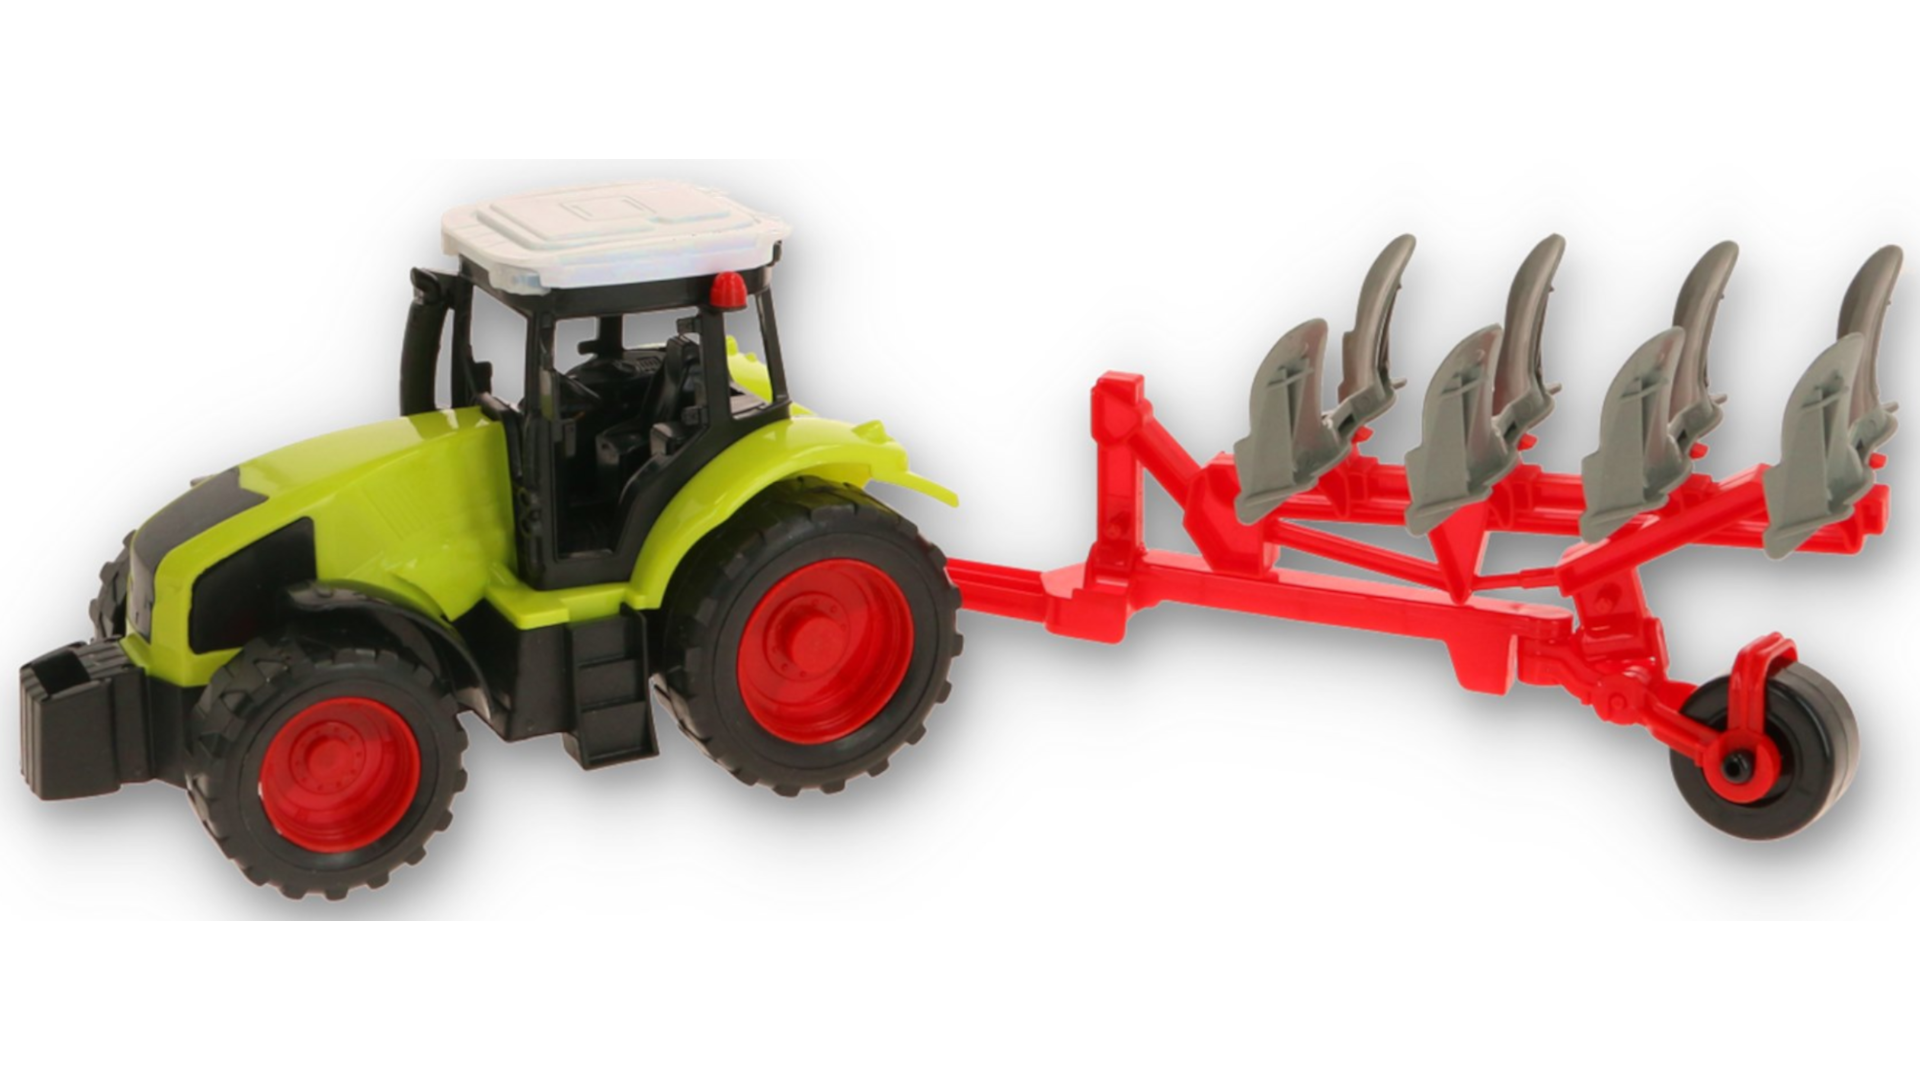 Zestaw Farmerski 3w1 Traktor Z Napędem + Przyczepa Do Drewna, Pług, Rozrzutnik Obornika TOMDORIX